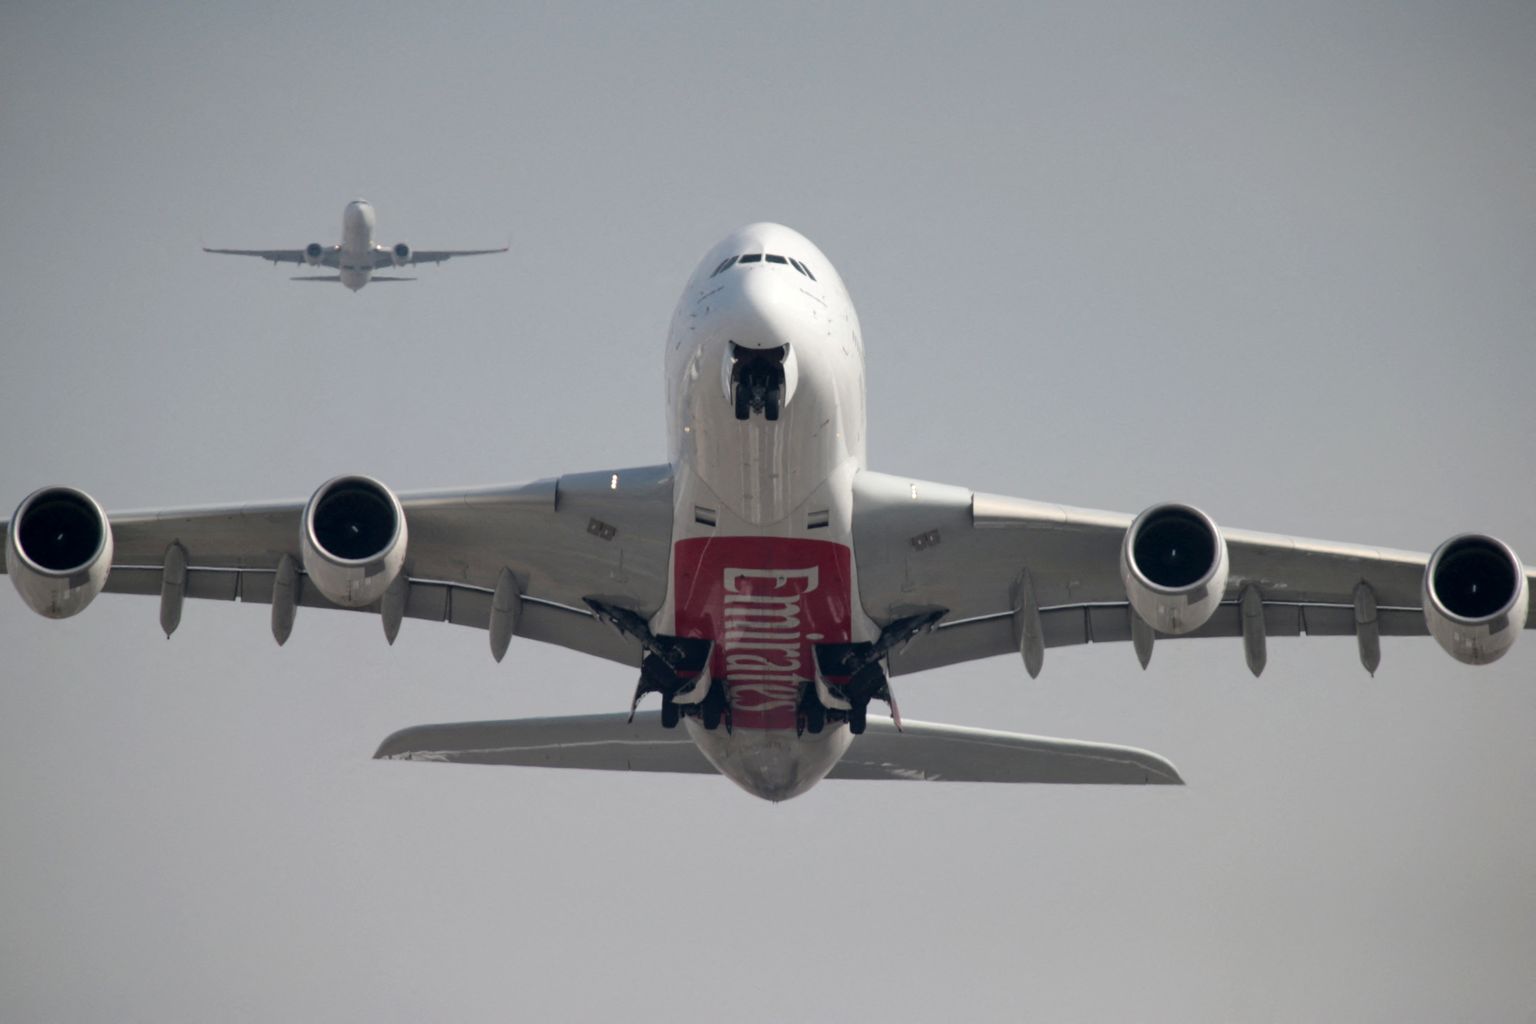 Lennufirma Emirates Airline Airbus A380 tõusmas õhku Dubai lennuväljalt. Pilt on illustreeriv